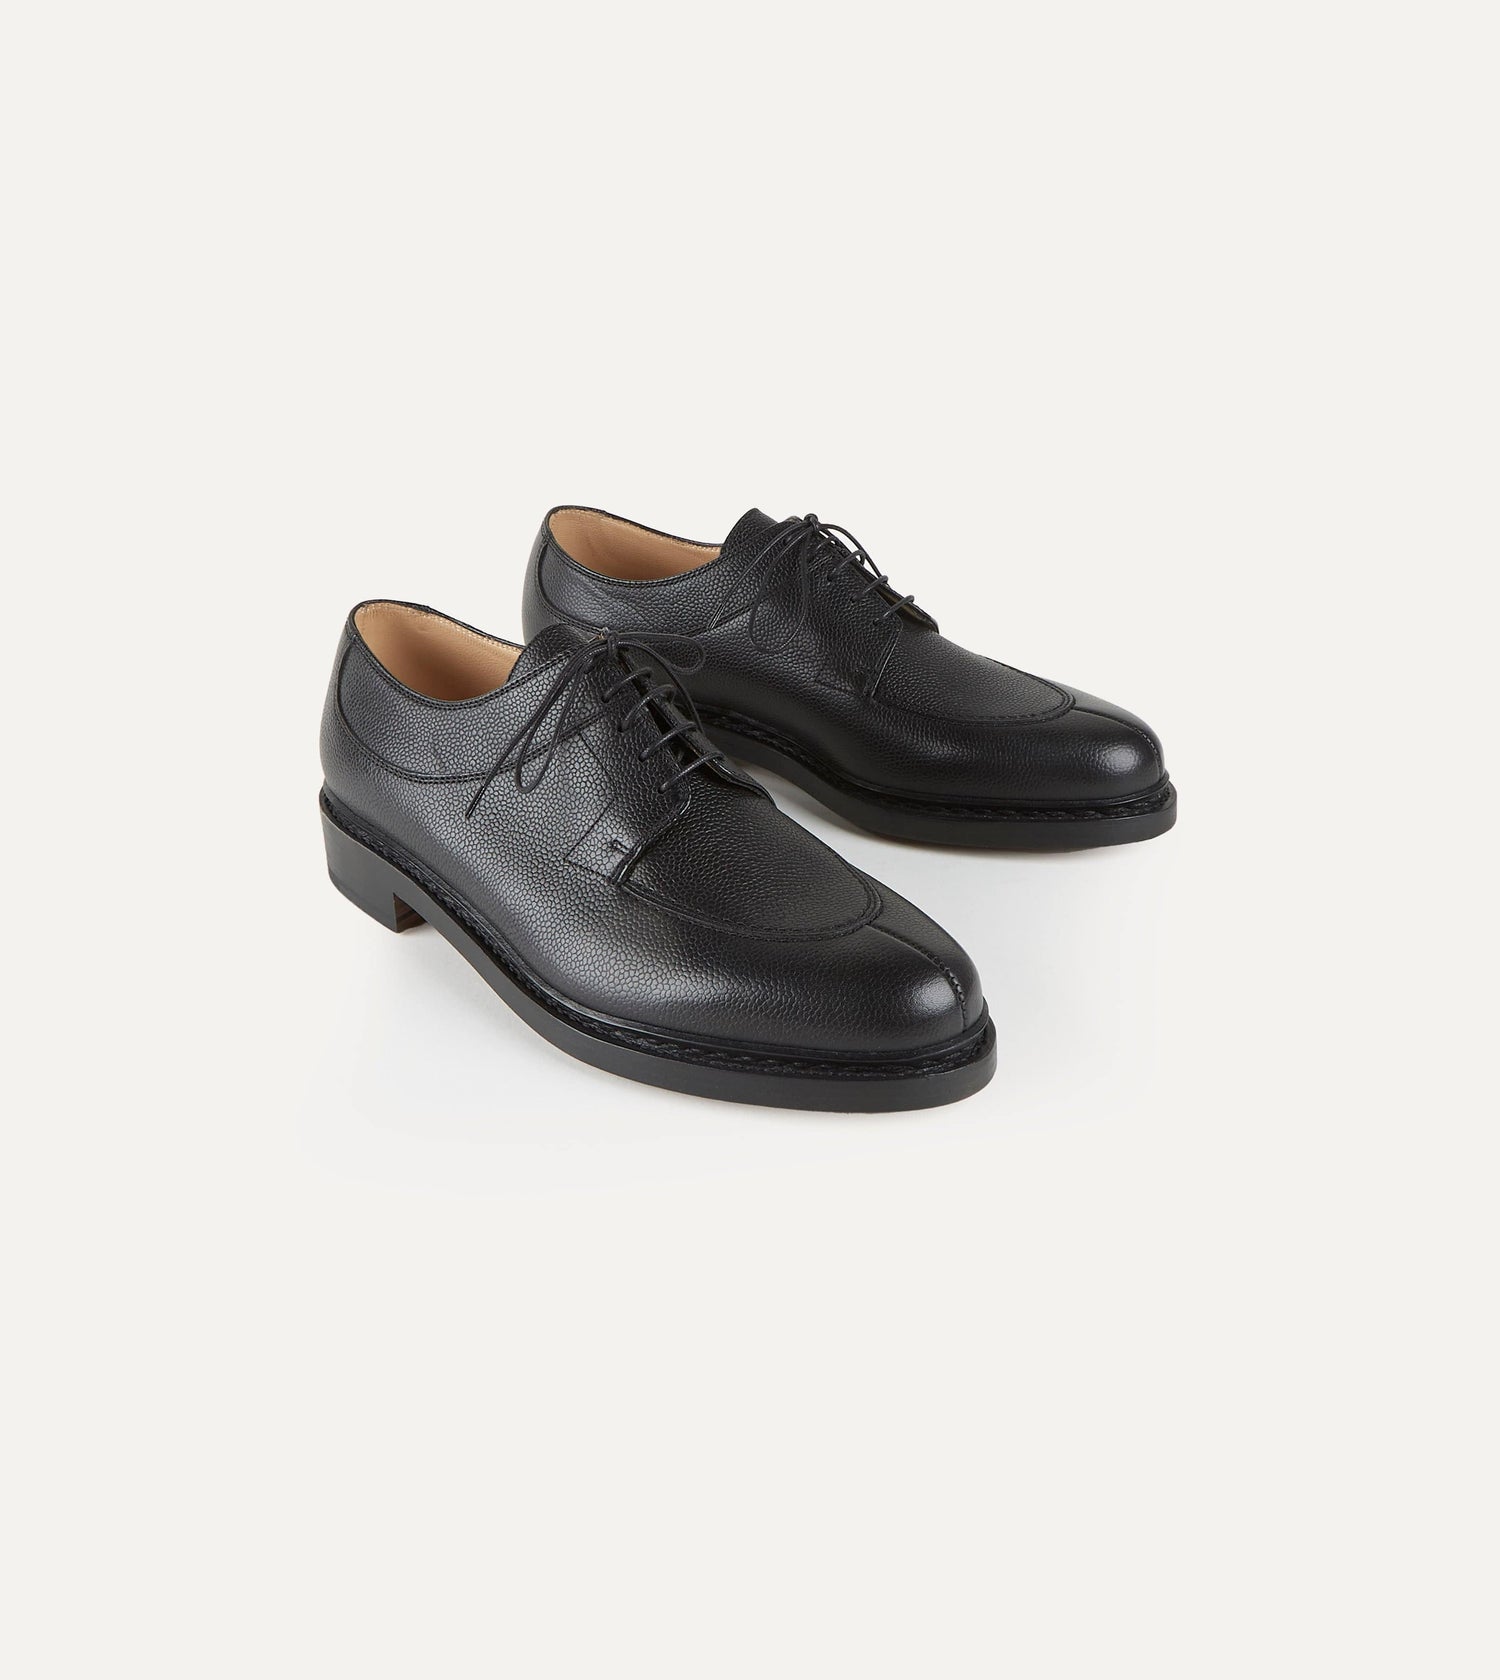 Paraboot Avignon Black Grain Leather Derby Shoe